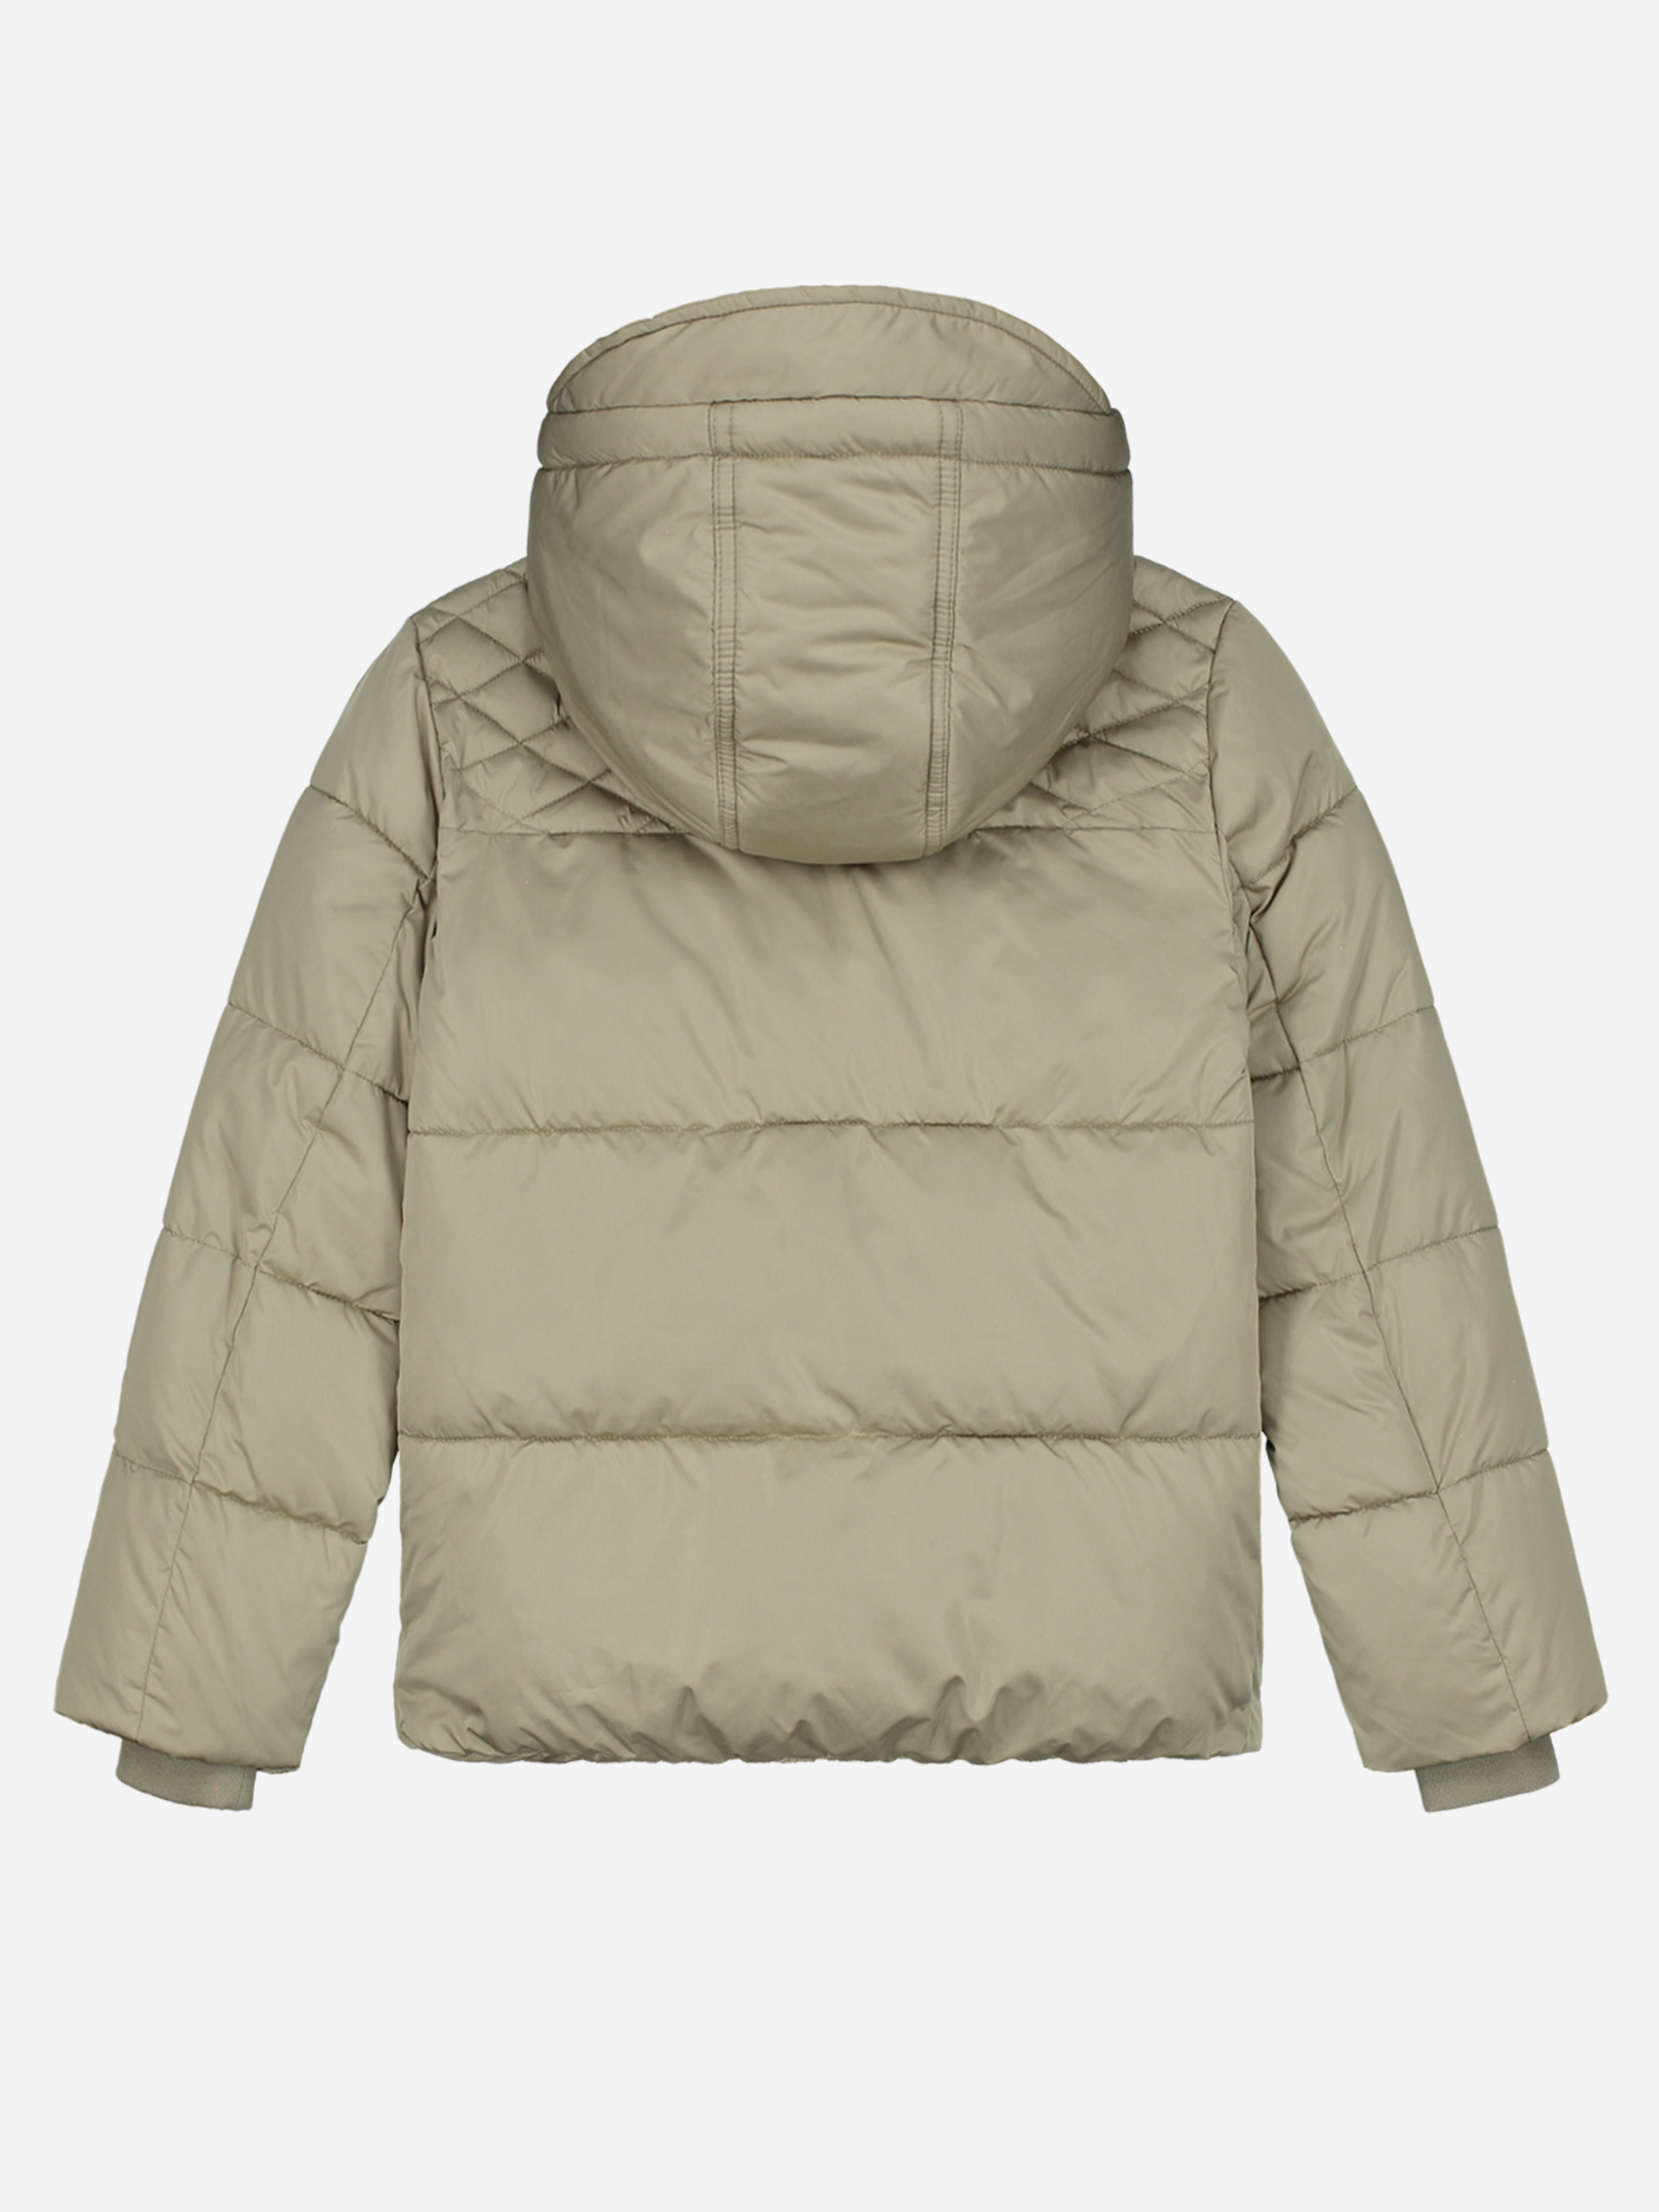 NKNDNK short puffer coat with hood 